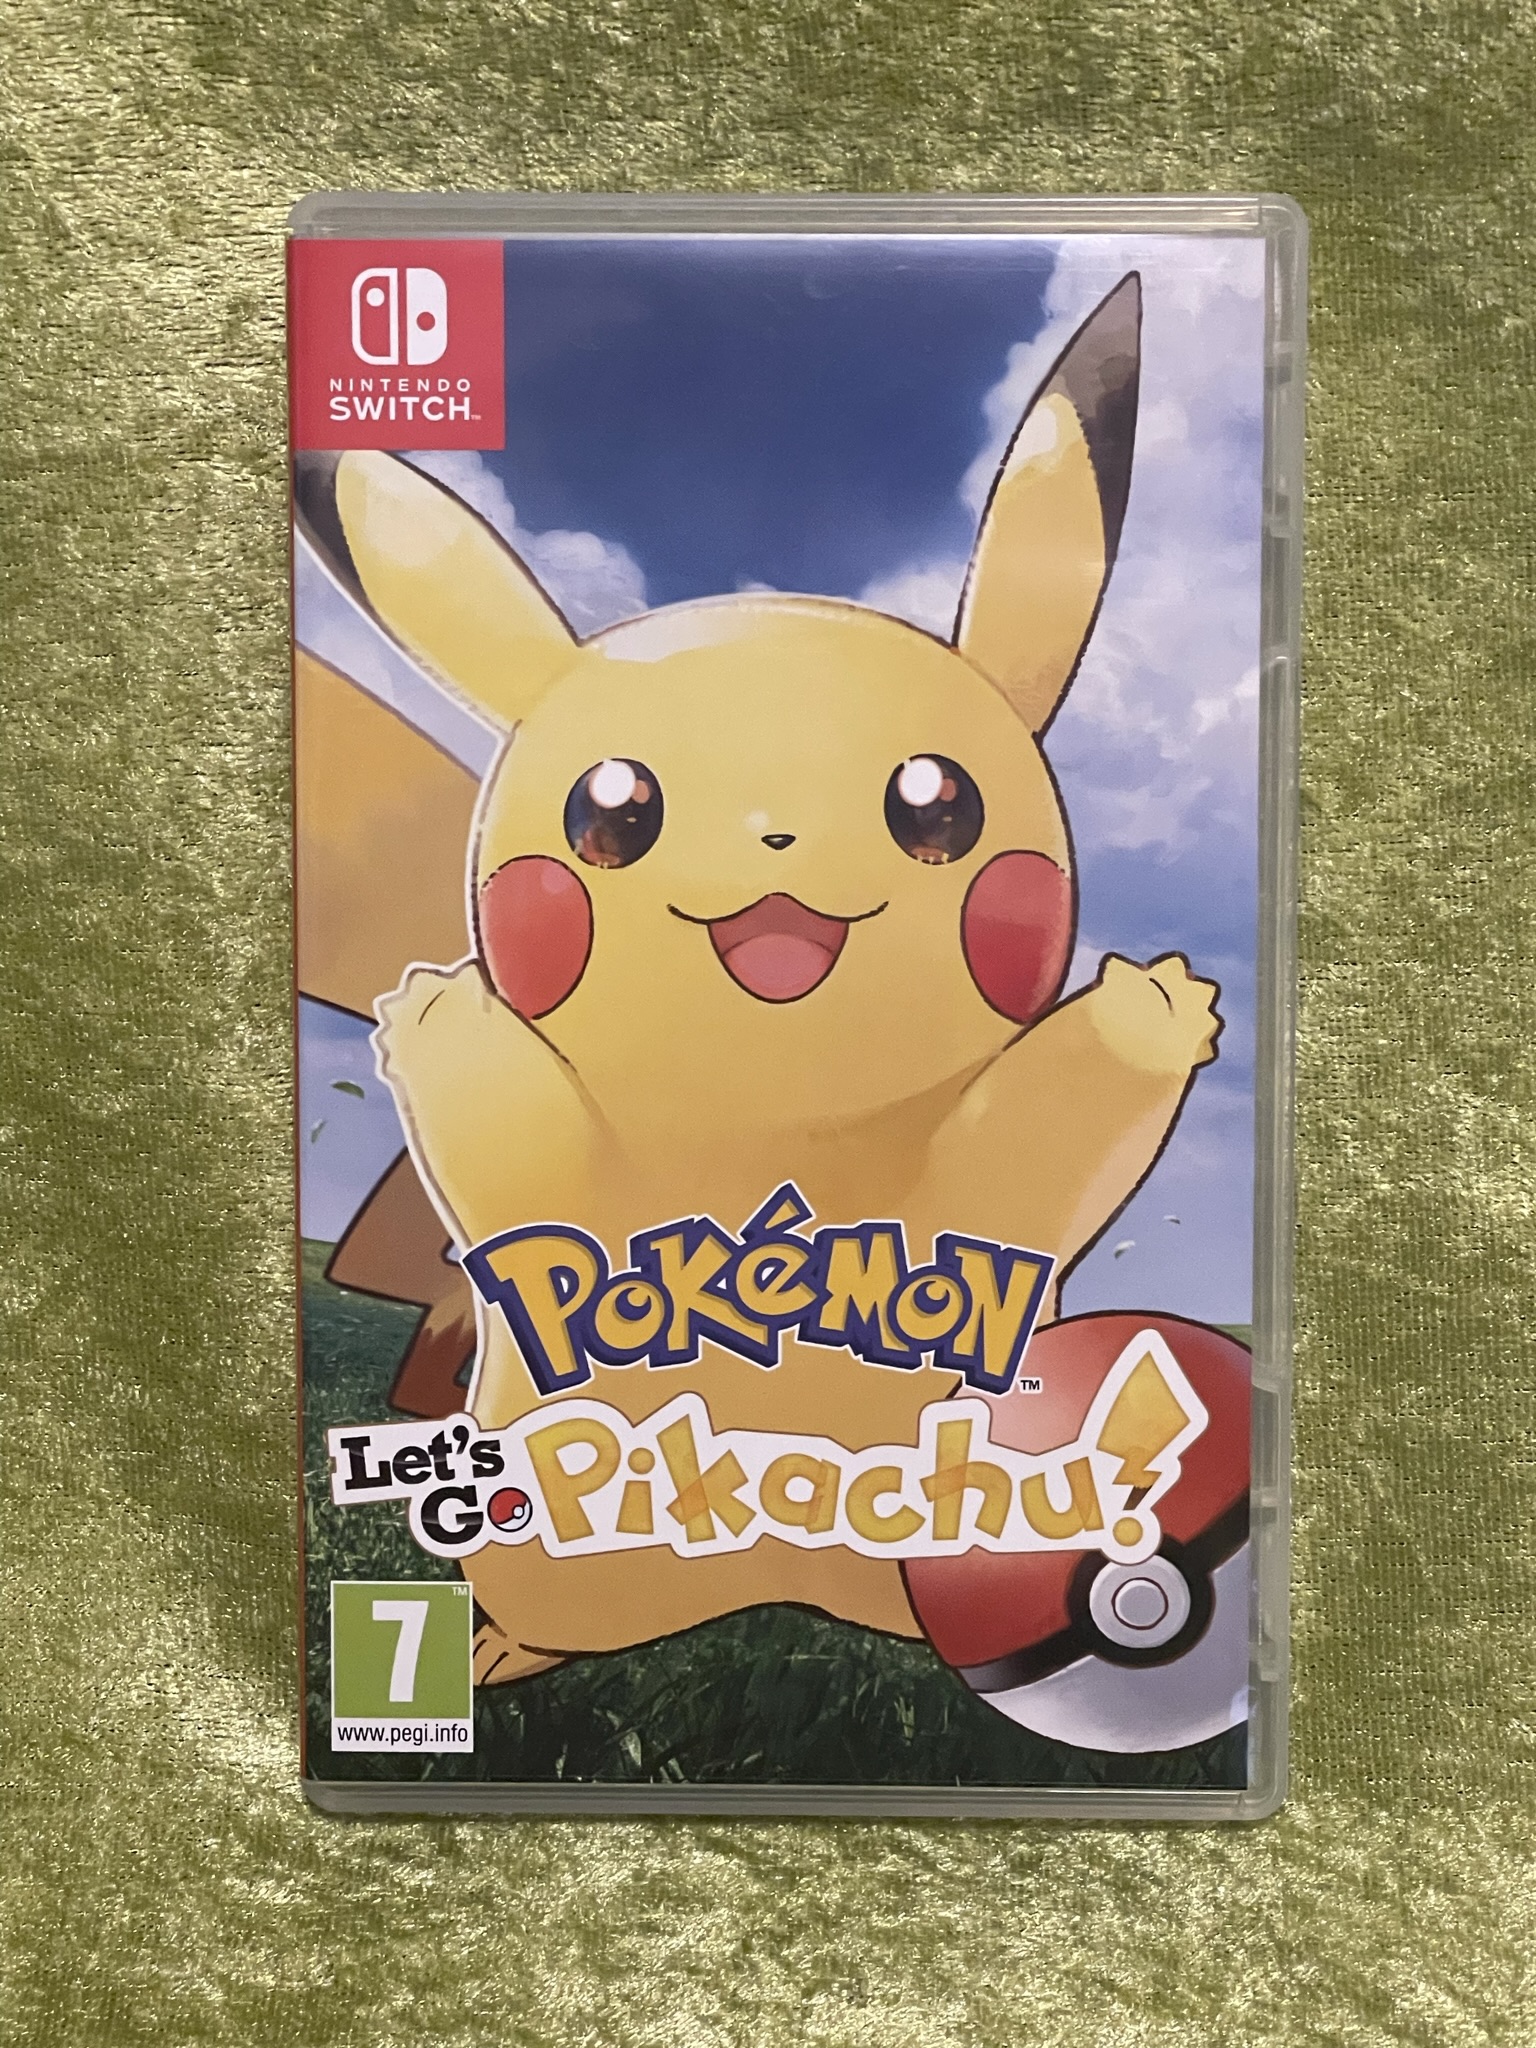 Pokemon Let's Go Pikachu